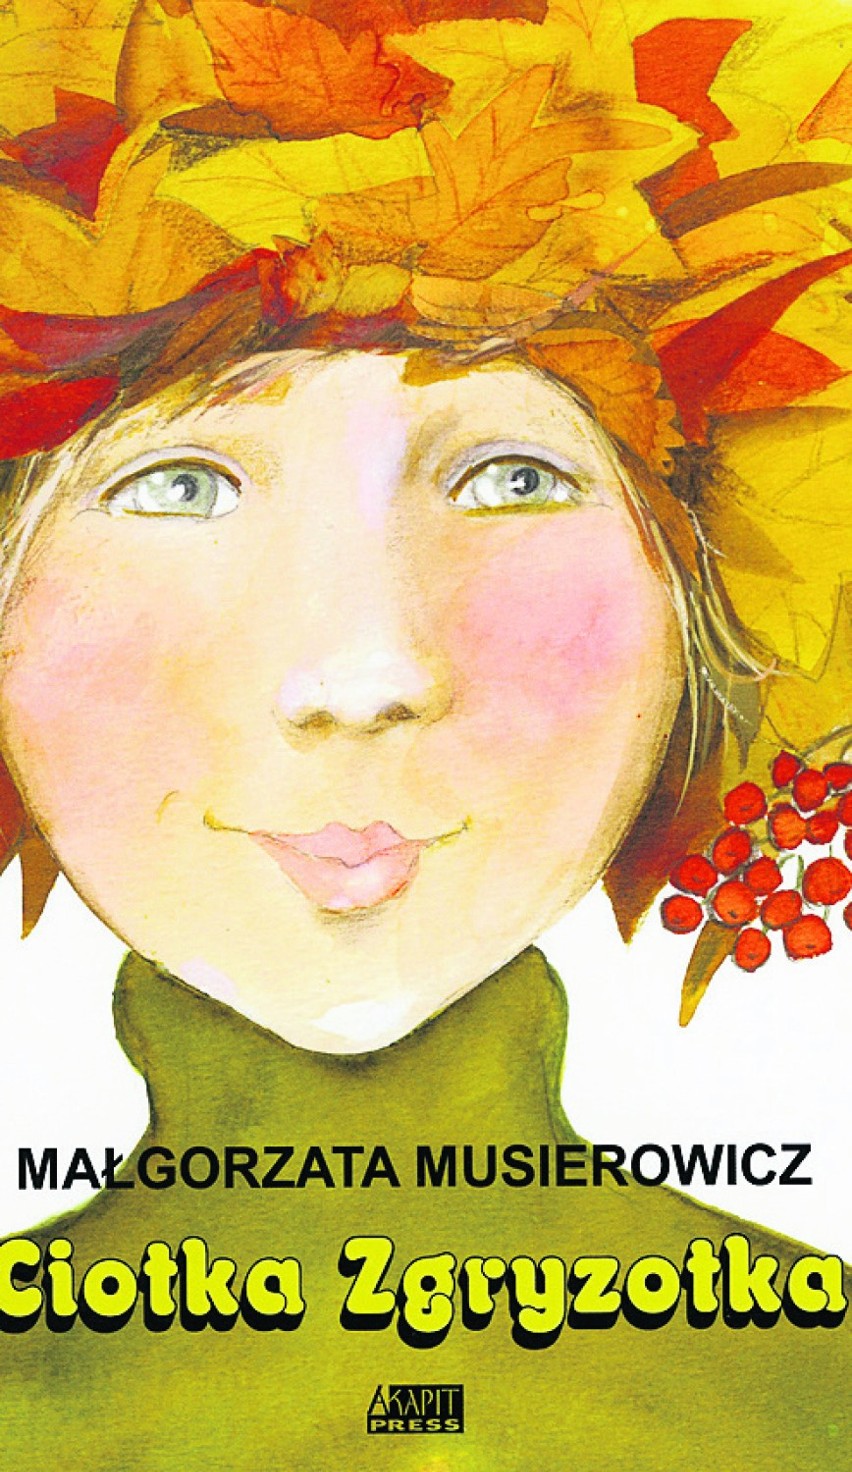 Okładka książki Małgorzaty Musierowicz pt. „Ciotka...